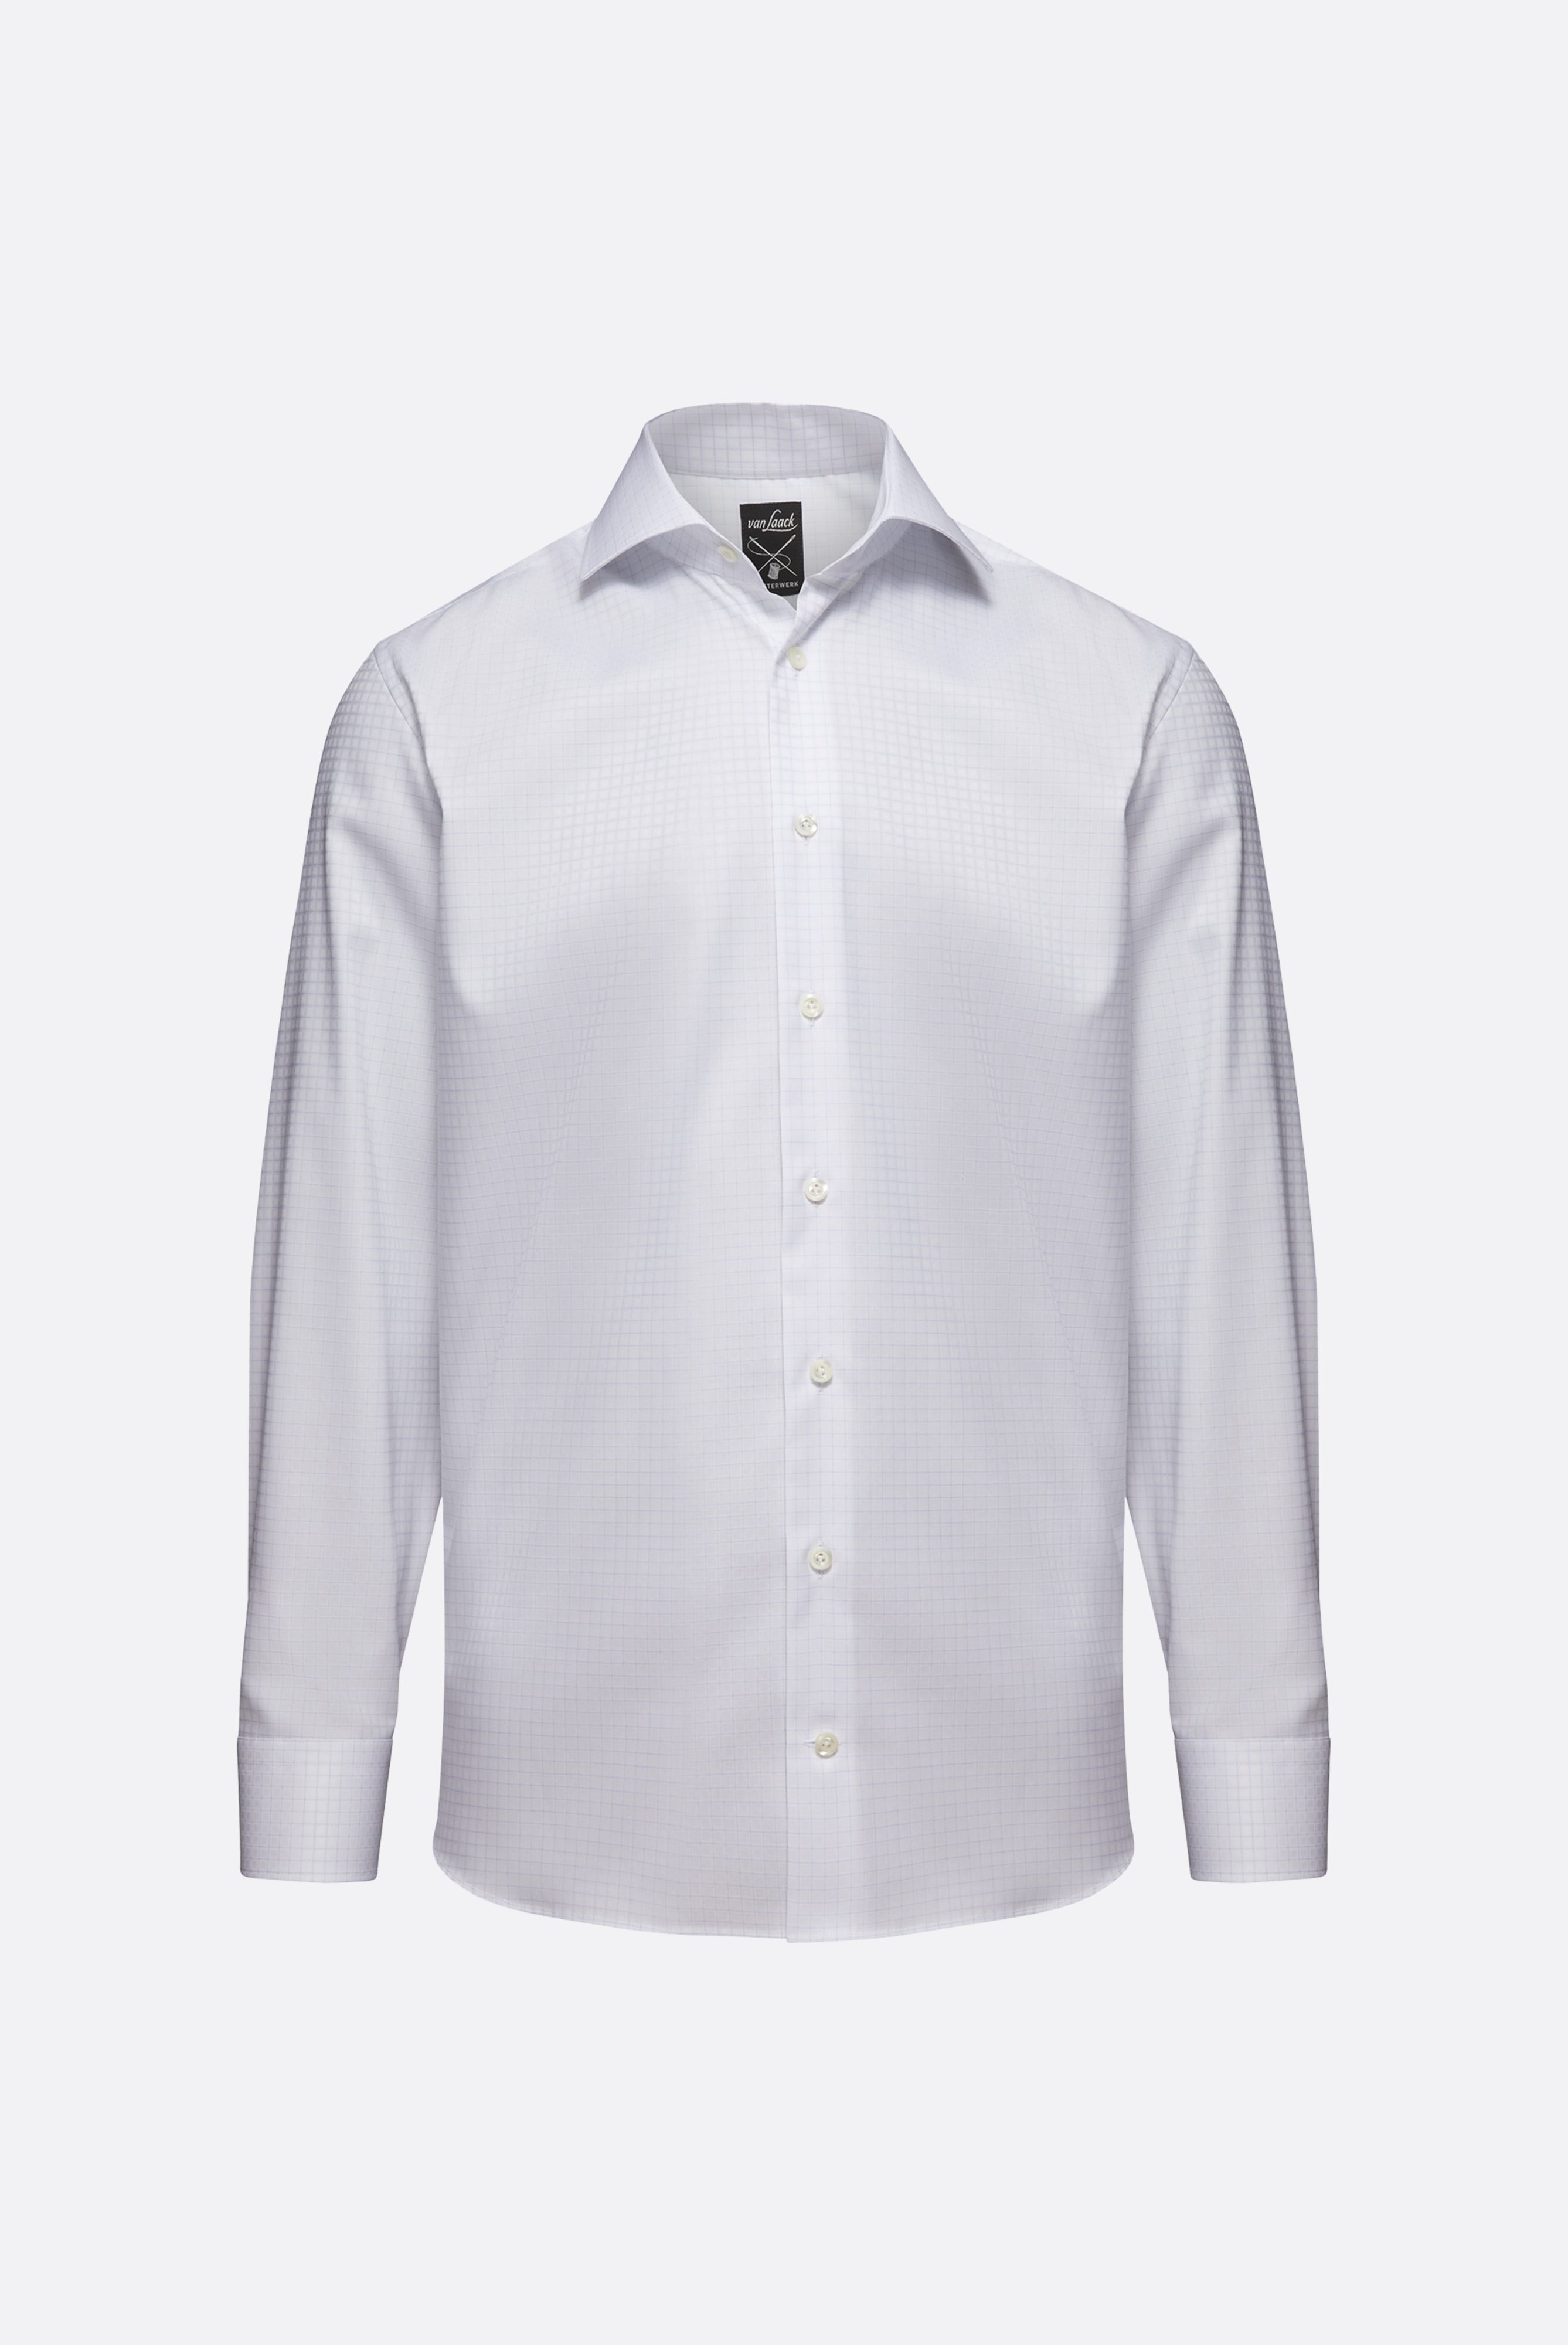 Bügelleichte Hemden+Bügelfreies Kariertes Twill-Hemd Tailor Fit+20.2020.BQ.161105.007.40